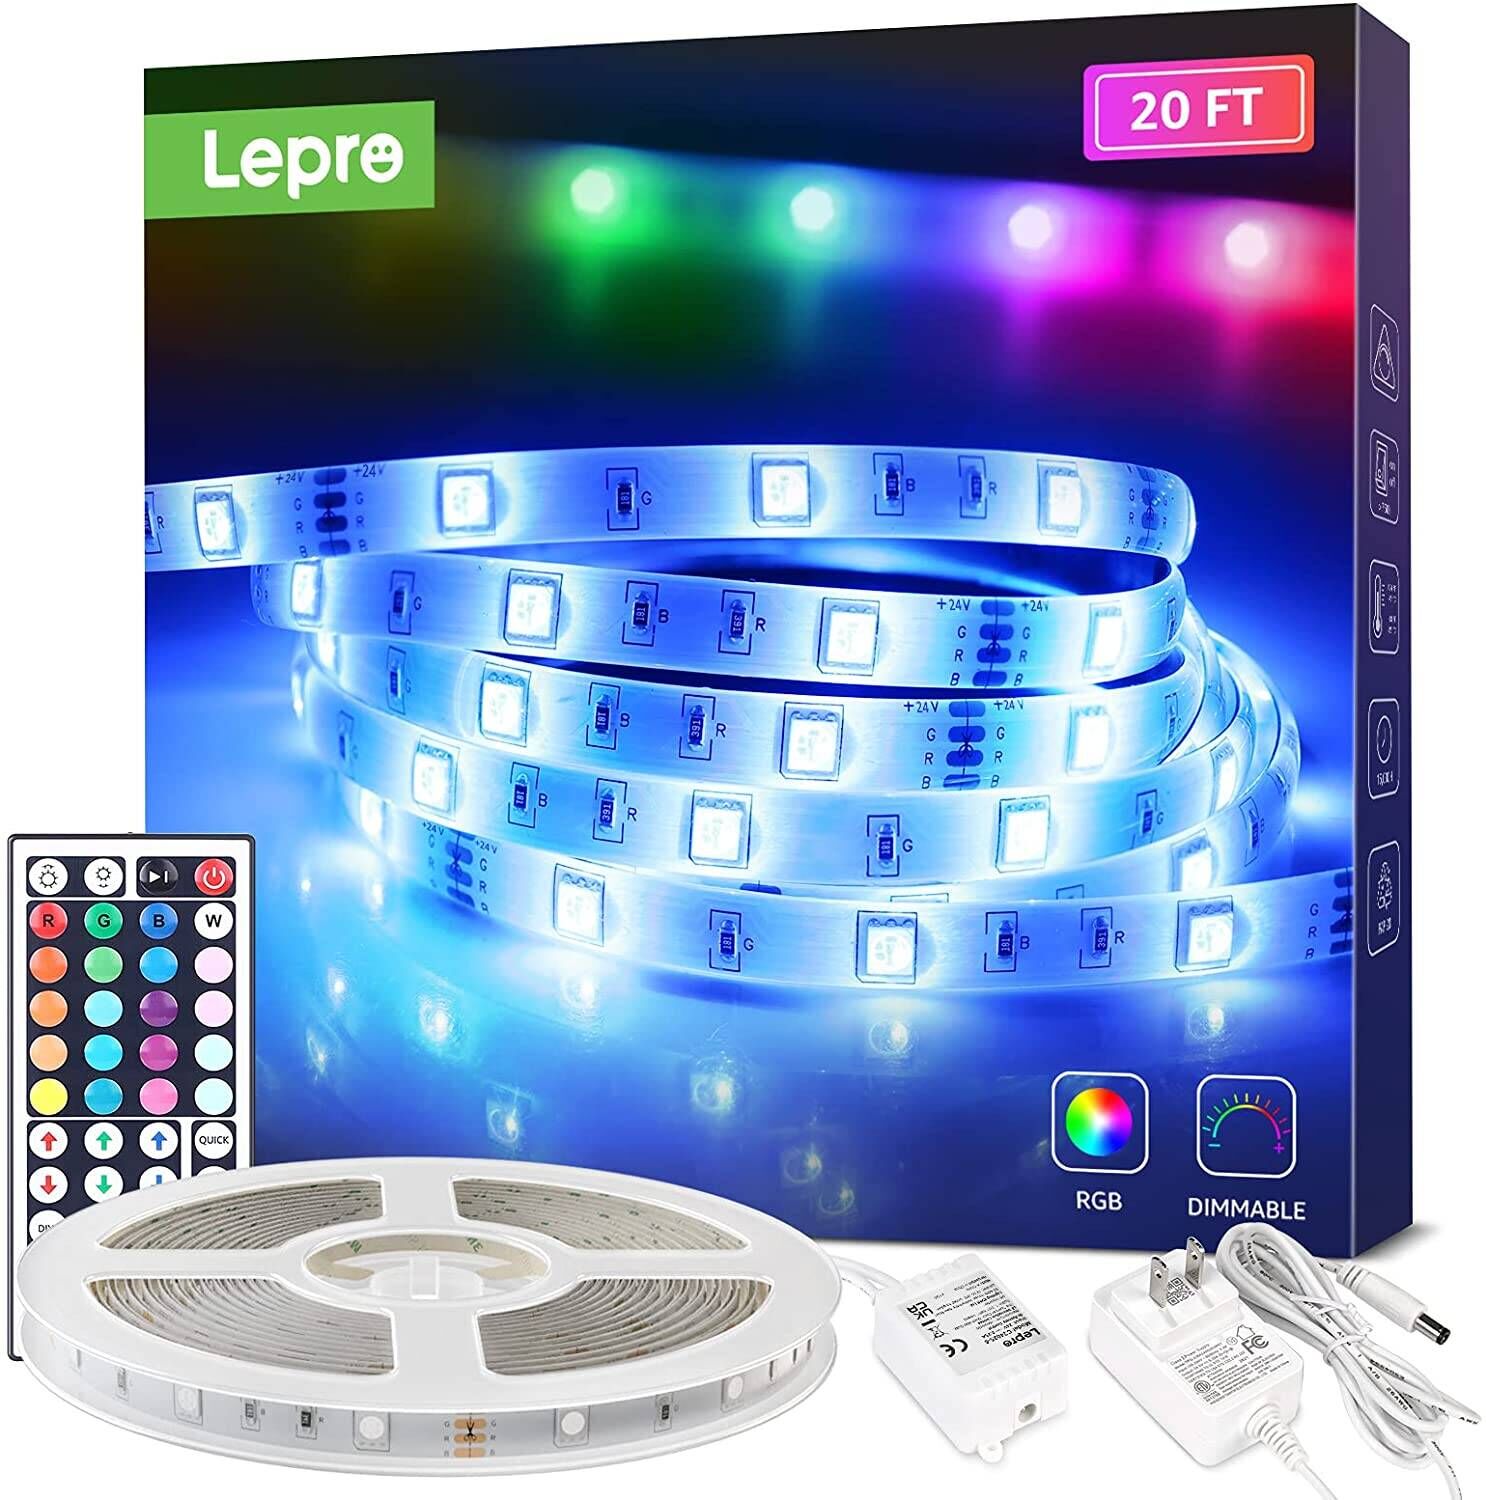 Lepro LED Strip Lights, 20Ft RGB LED Strips, 5050 SMD LED Color Changing  Strip Light with 44 Keys Remote Controller and 24V Power Supply, LED Lights  for Bedroom, Home, TV Backlight